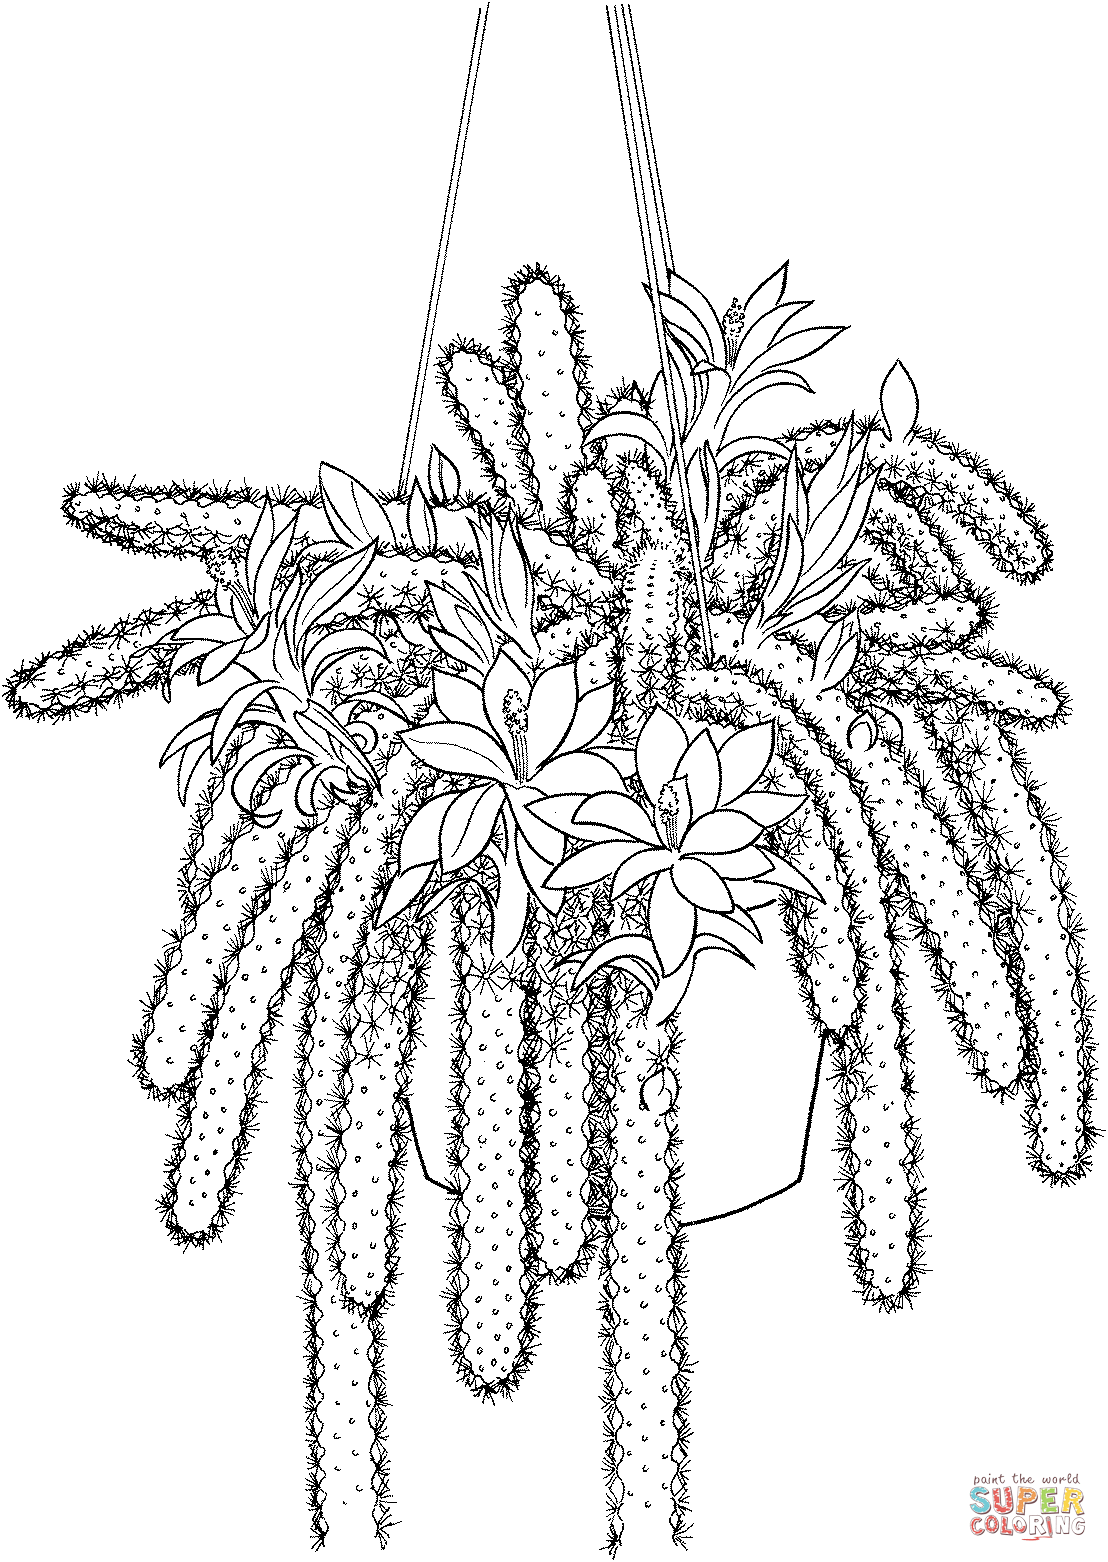 Disocactus Flagelliformis Or Rattail Cactus Coloring Pages